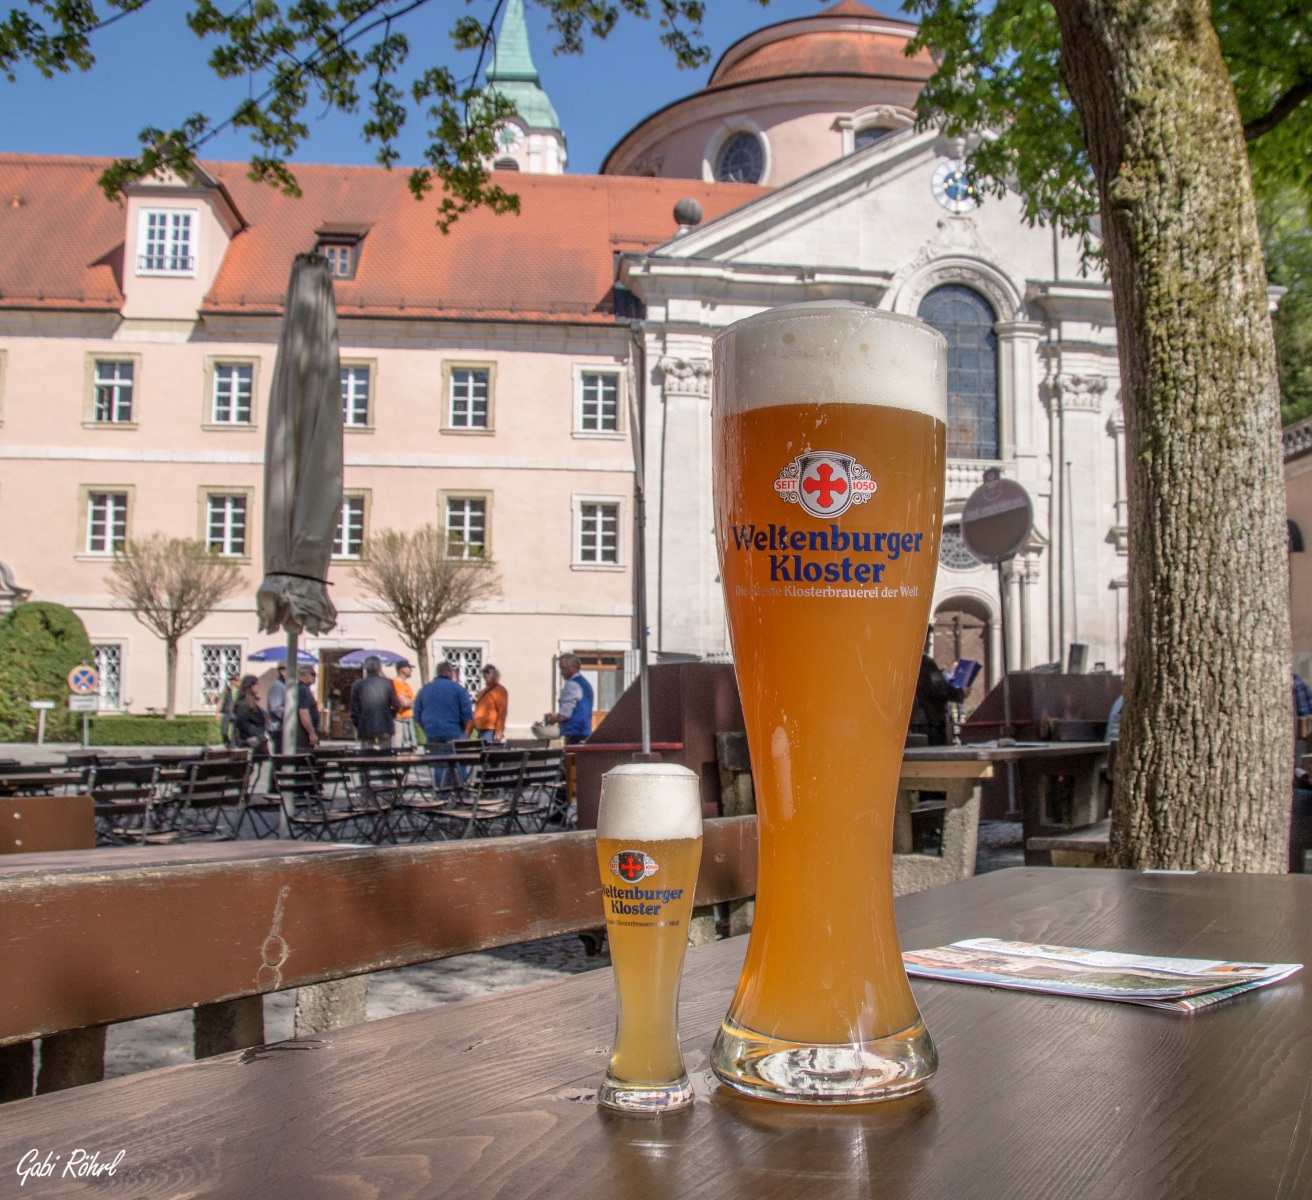 Weltenburg Abbey Brewery